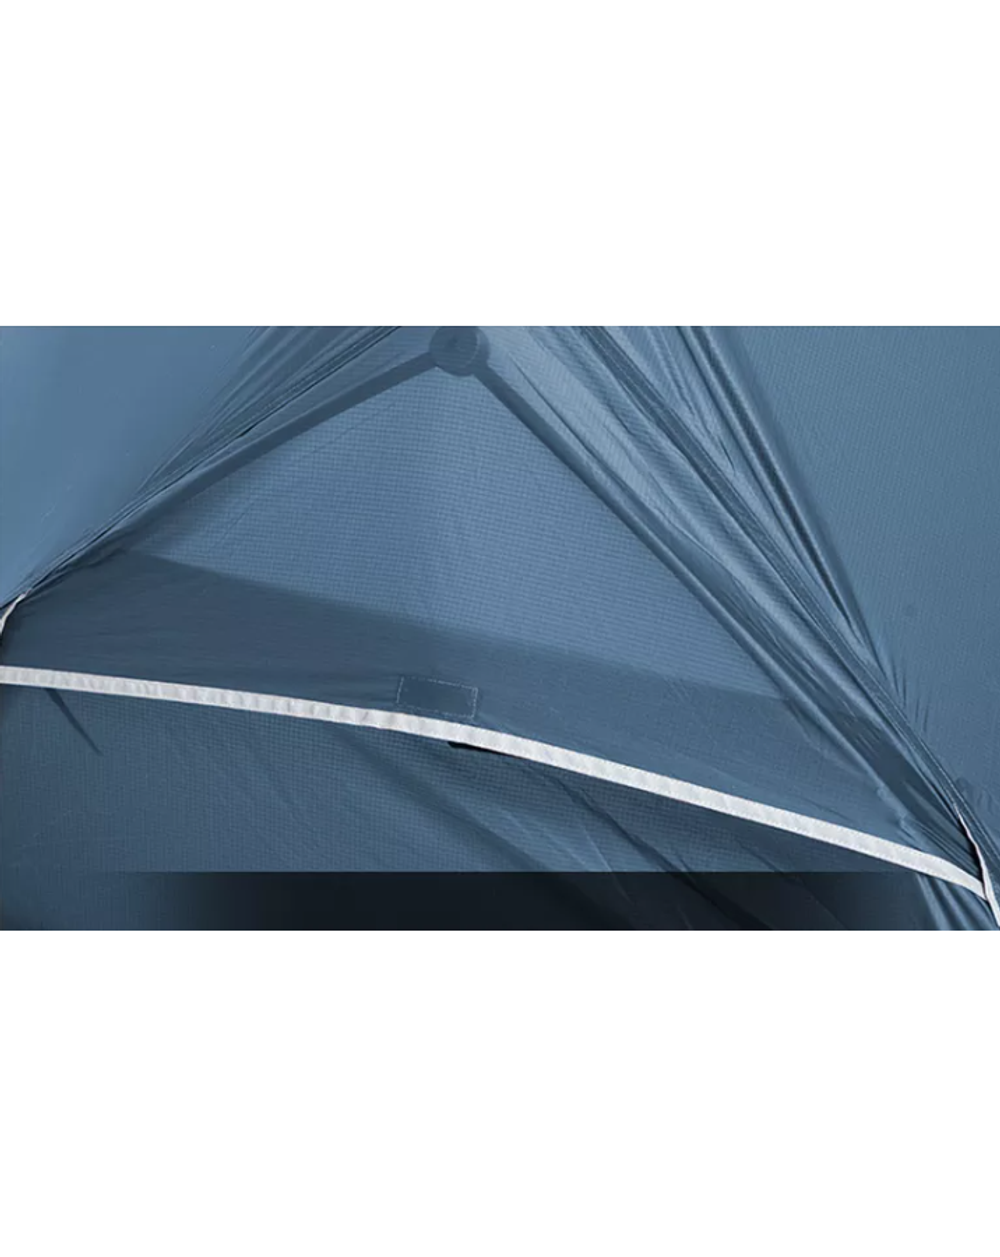 Палатка Naturehike Mongar 2-местная, алюминиевый каркас, сверхлегкая, синий